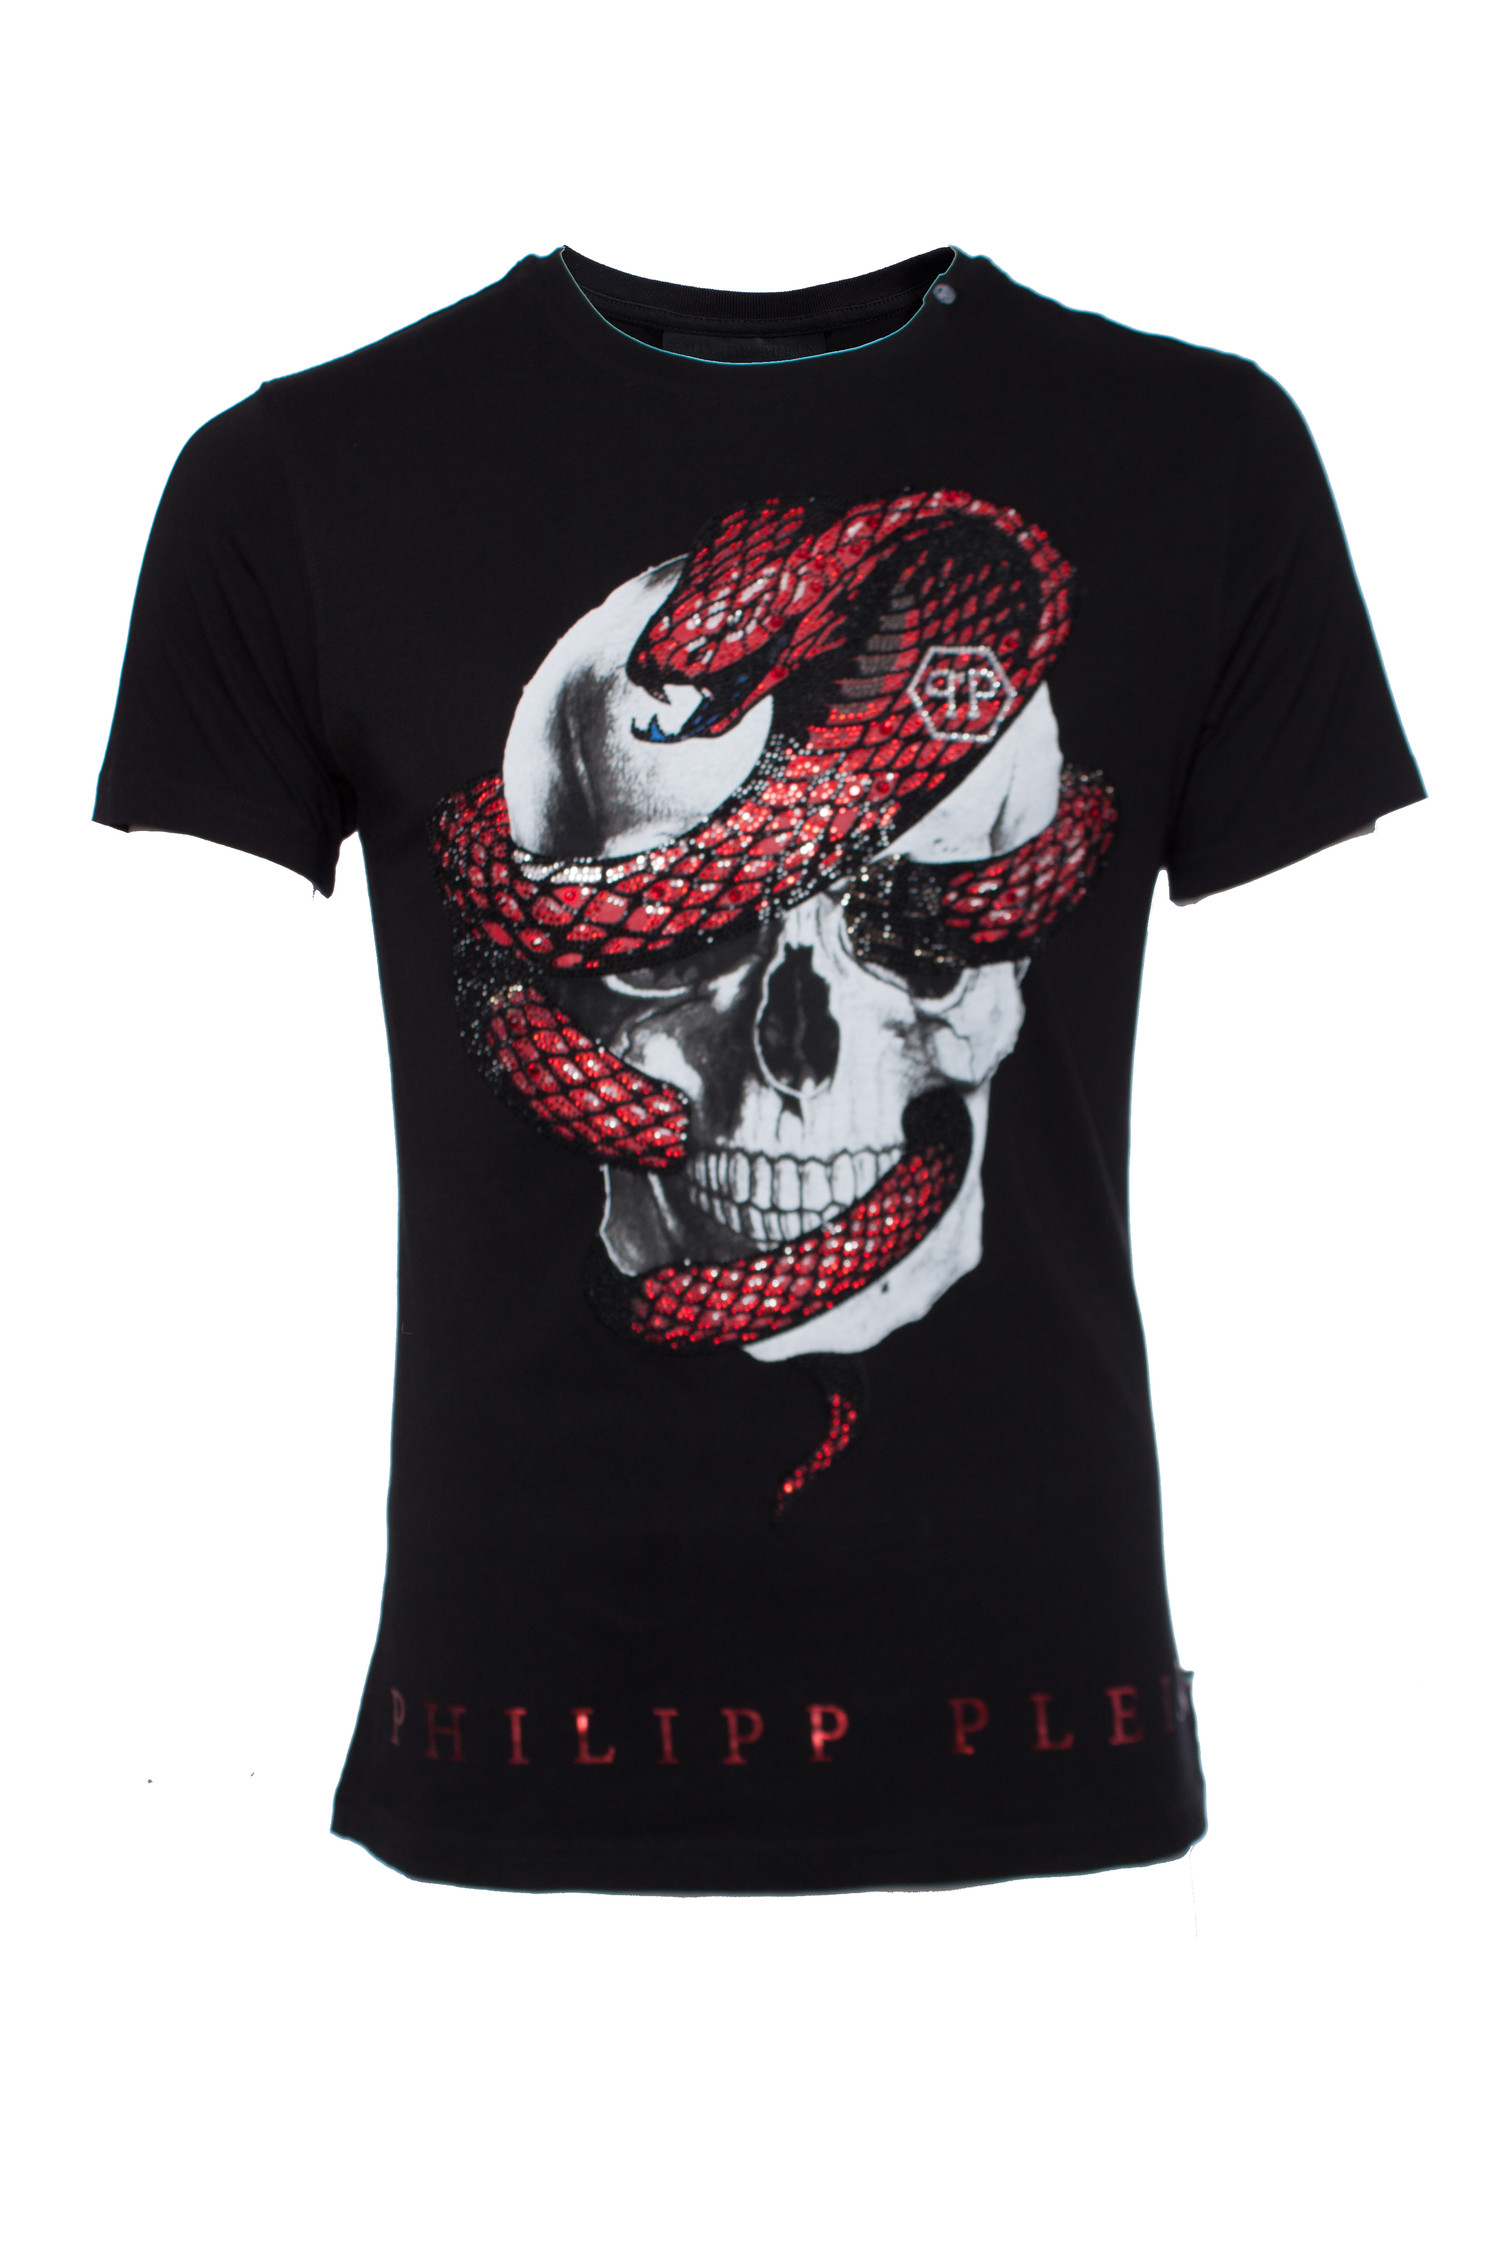 bar overzee Egyptische Philipp Plein, T-shirt met doodshoofd en slang - Unique Designer Pieces